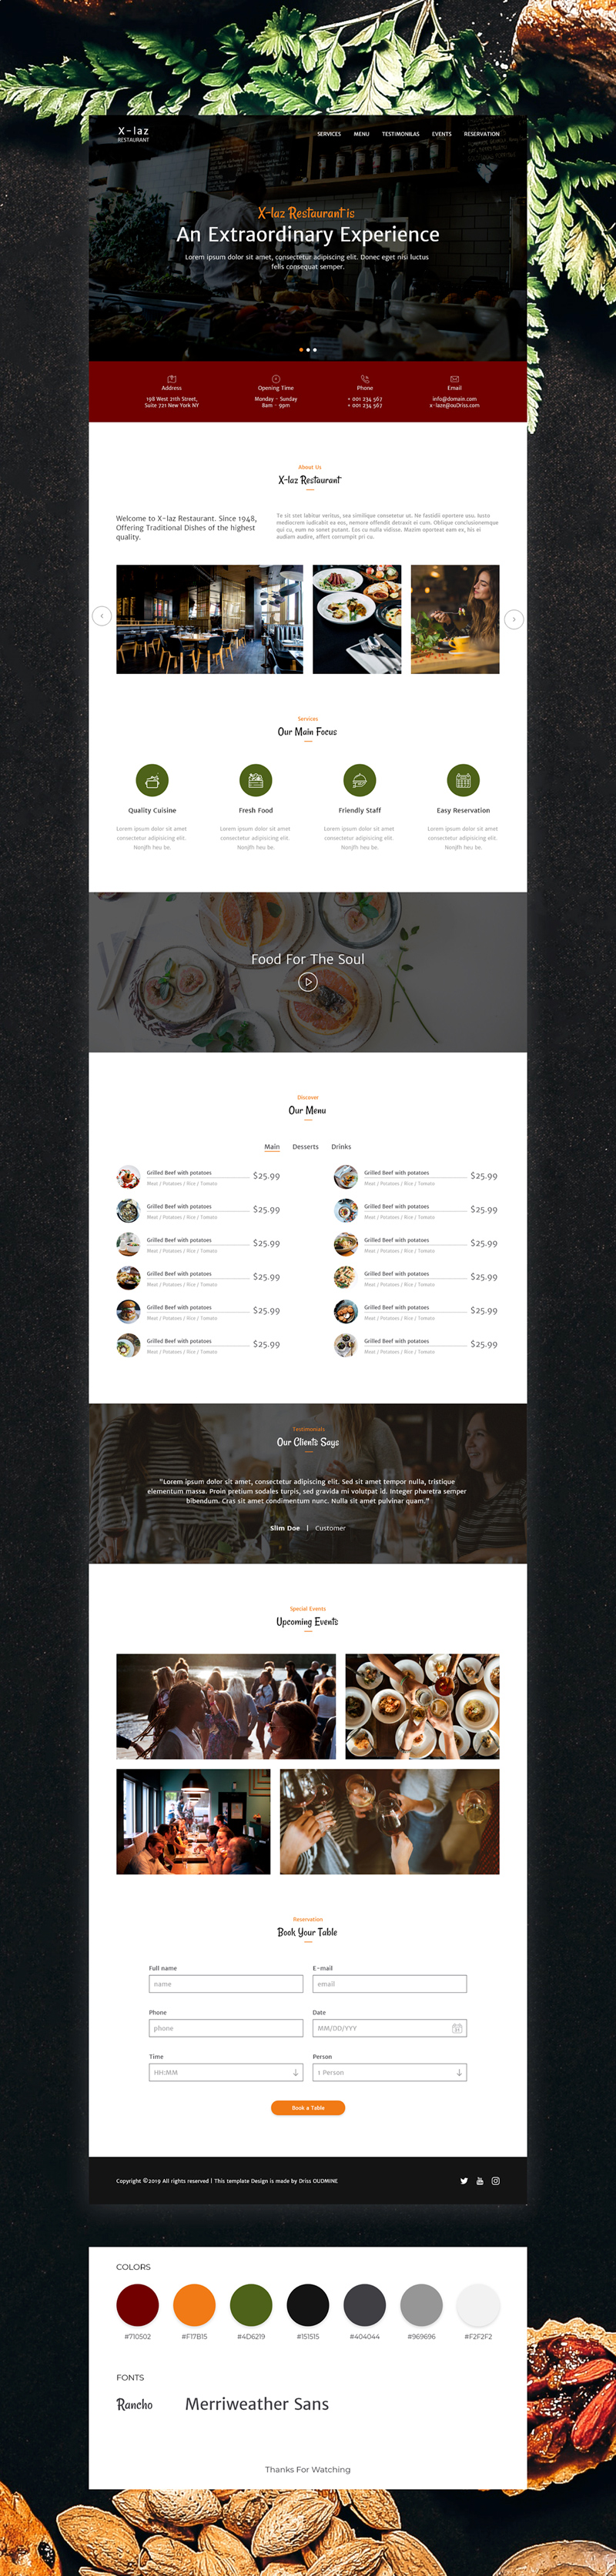 Diseño de restaurantes de la interfaz de usuario - Plantilla XD gratis